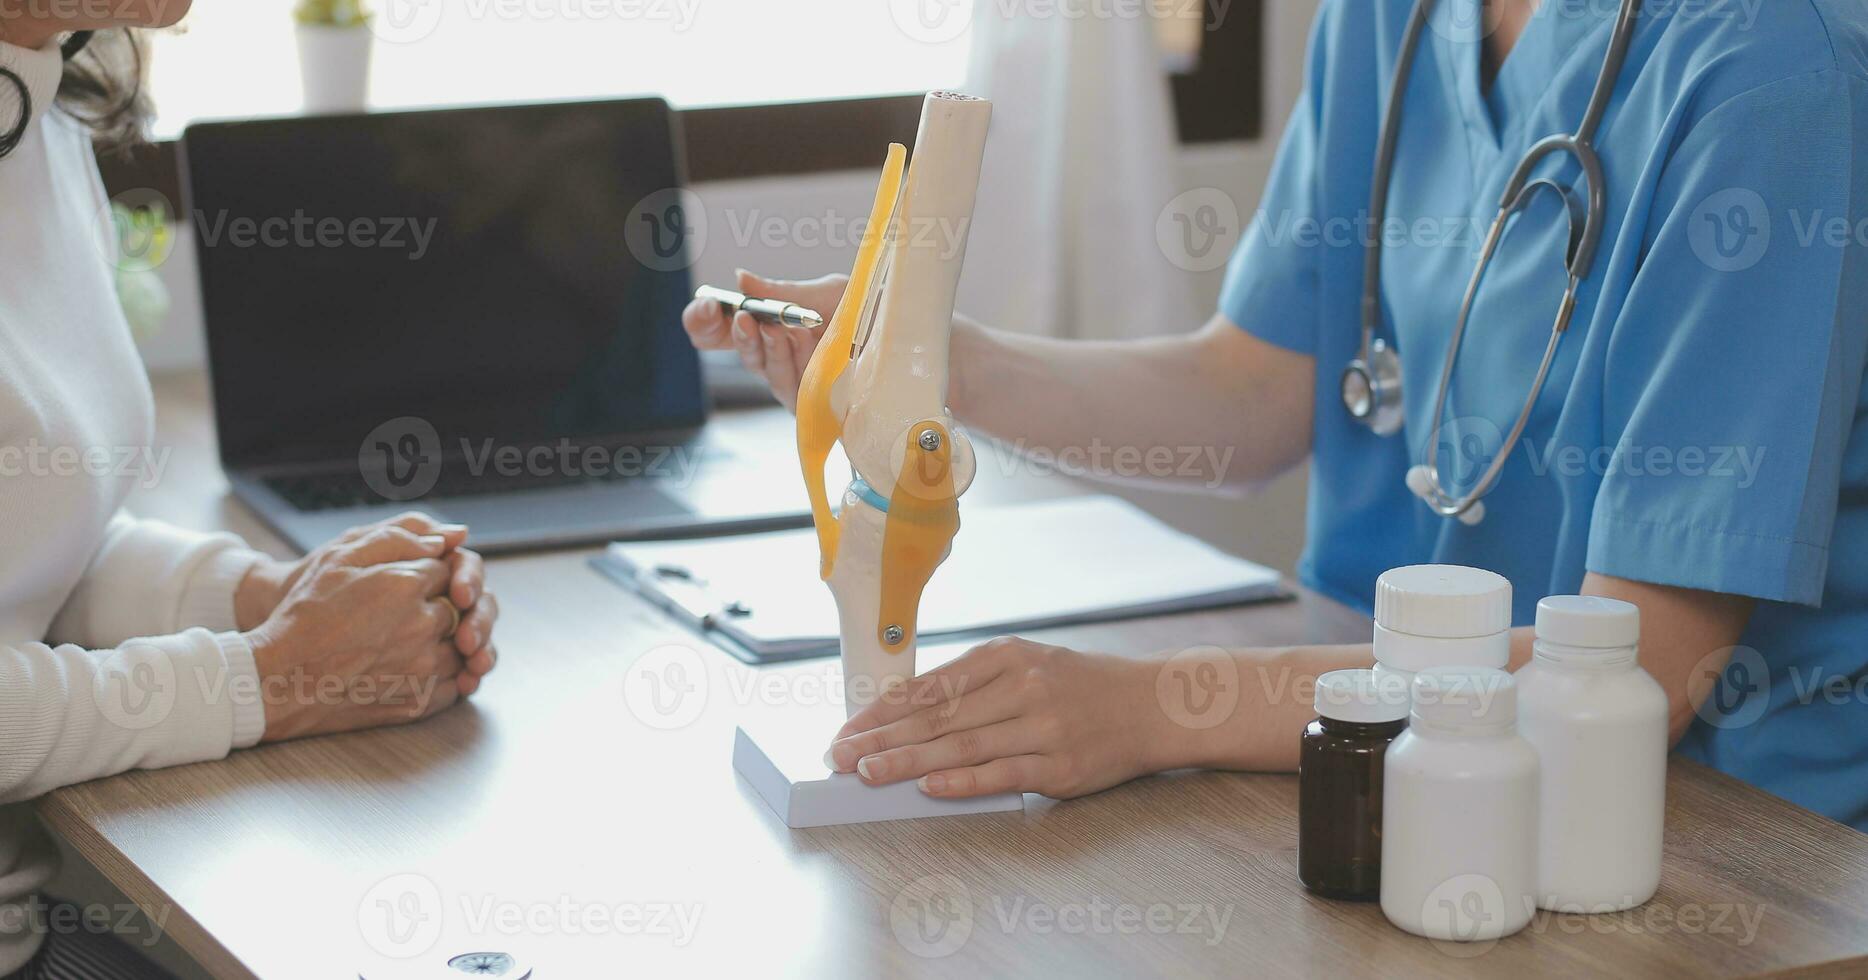 närbild av stetoskop och papper på bakgrund av läkare och patient händer foto